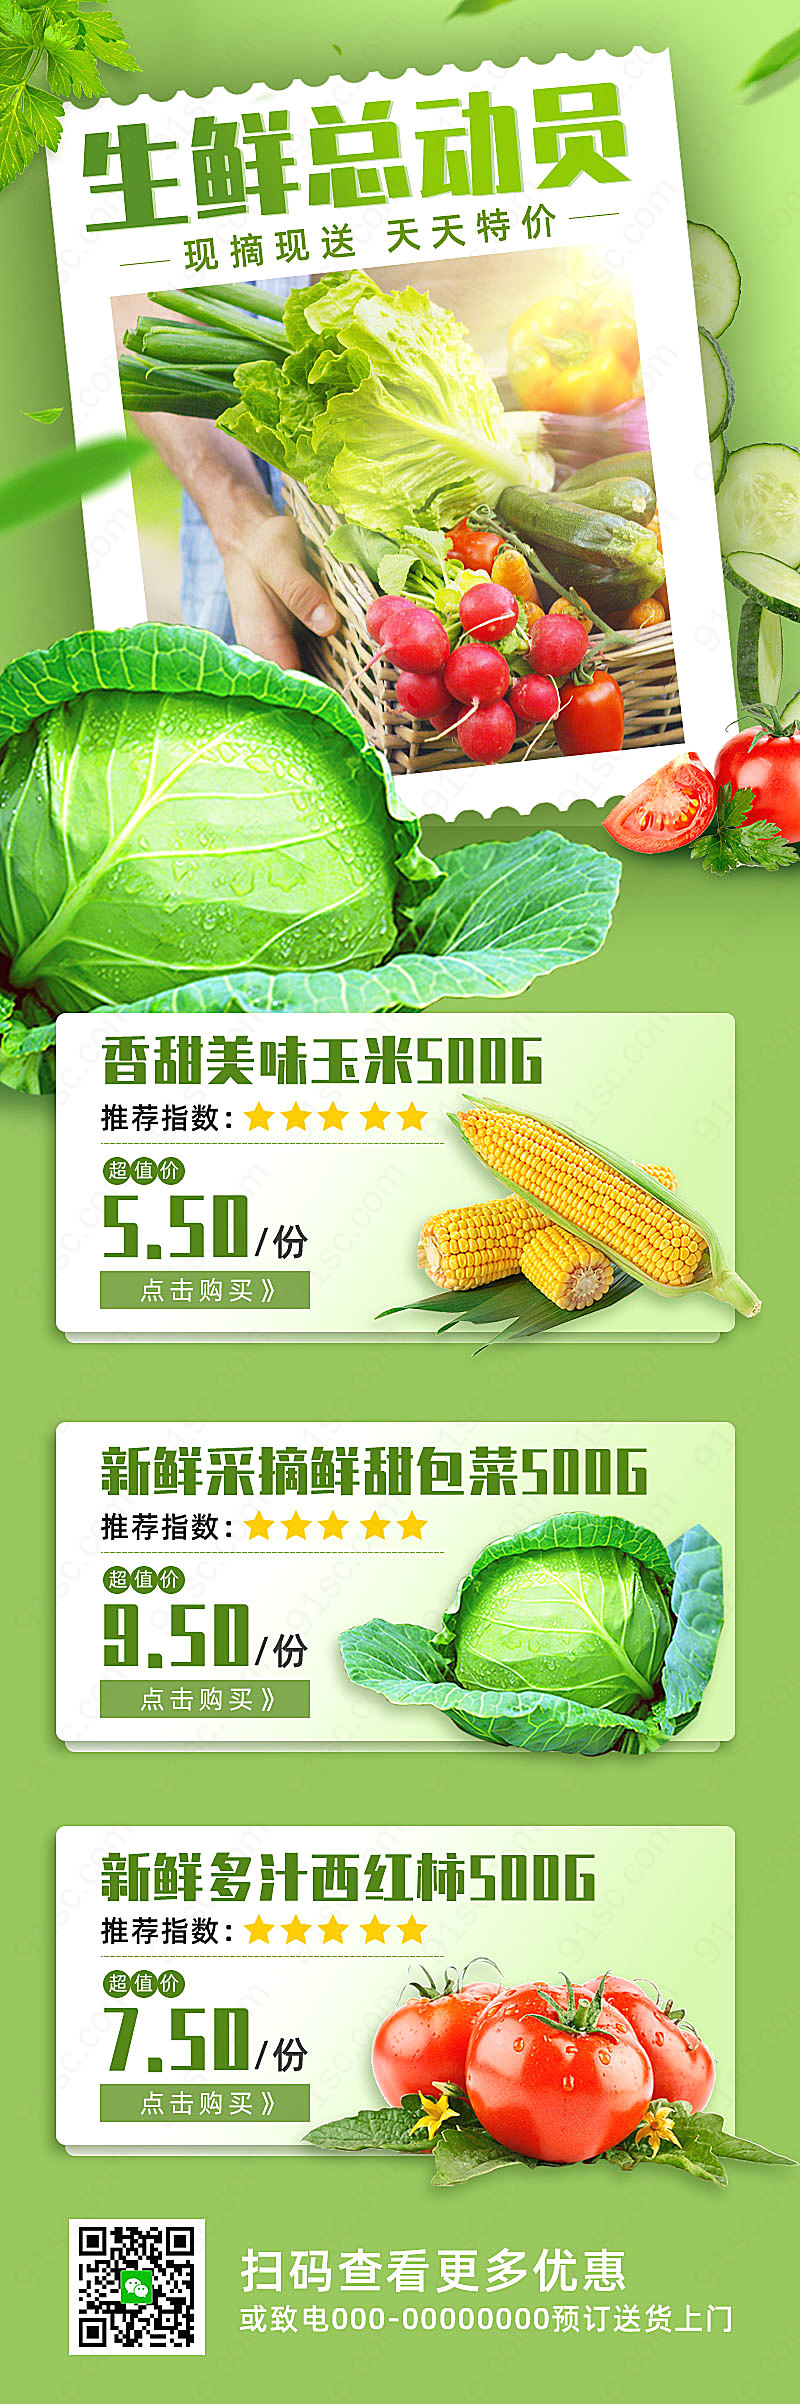 绿色小清新蔬菜总动员生鲜手机长图促销会员日新媒体用图下载